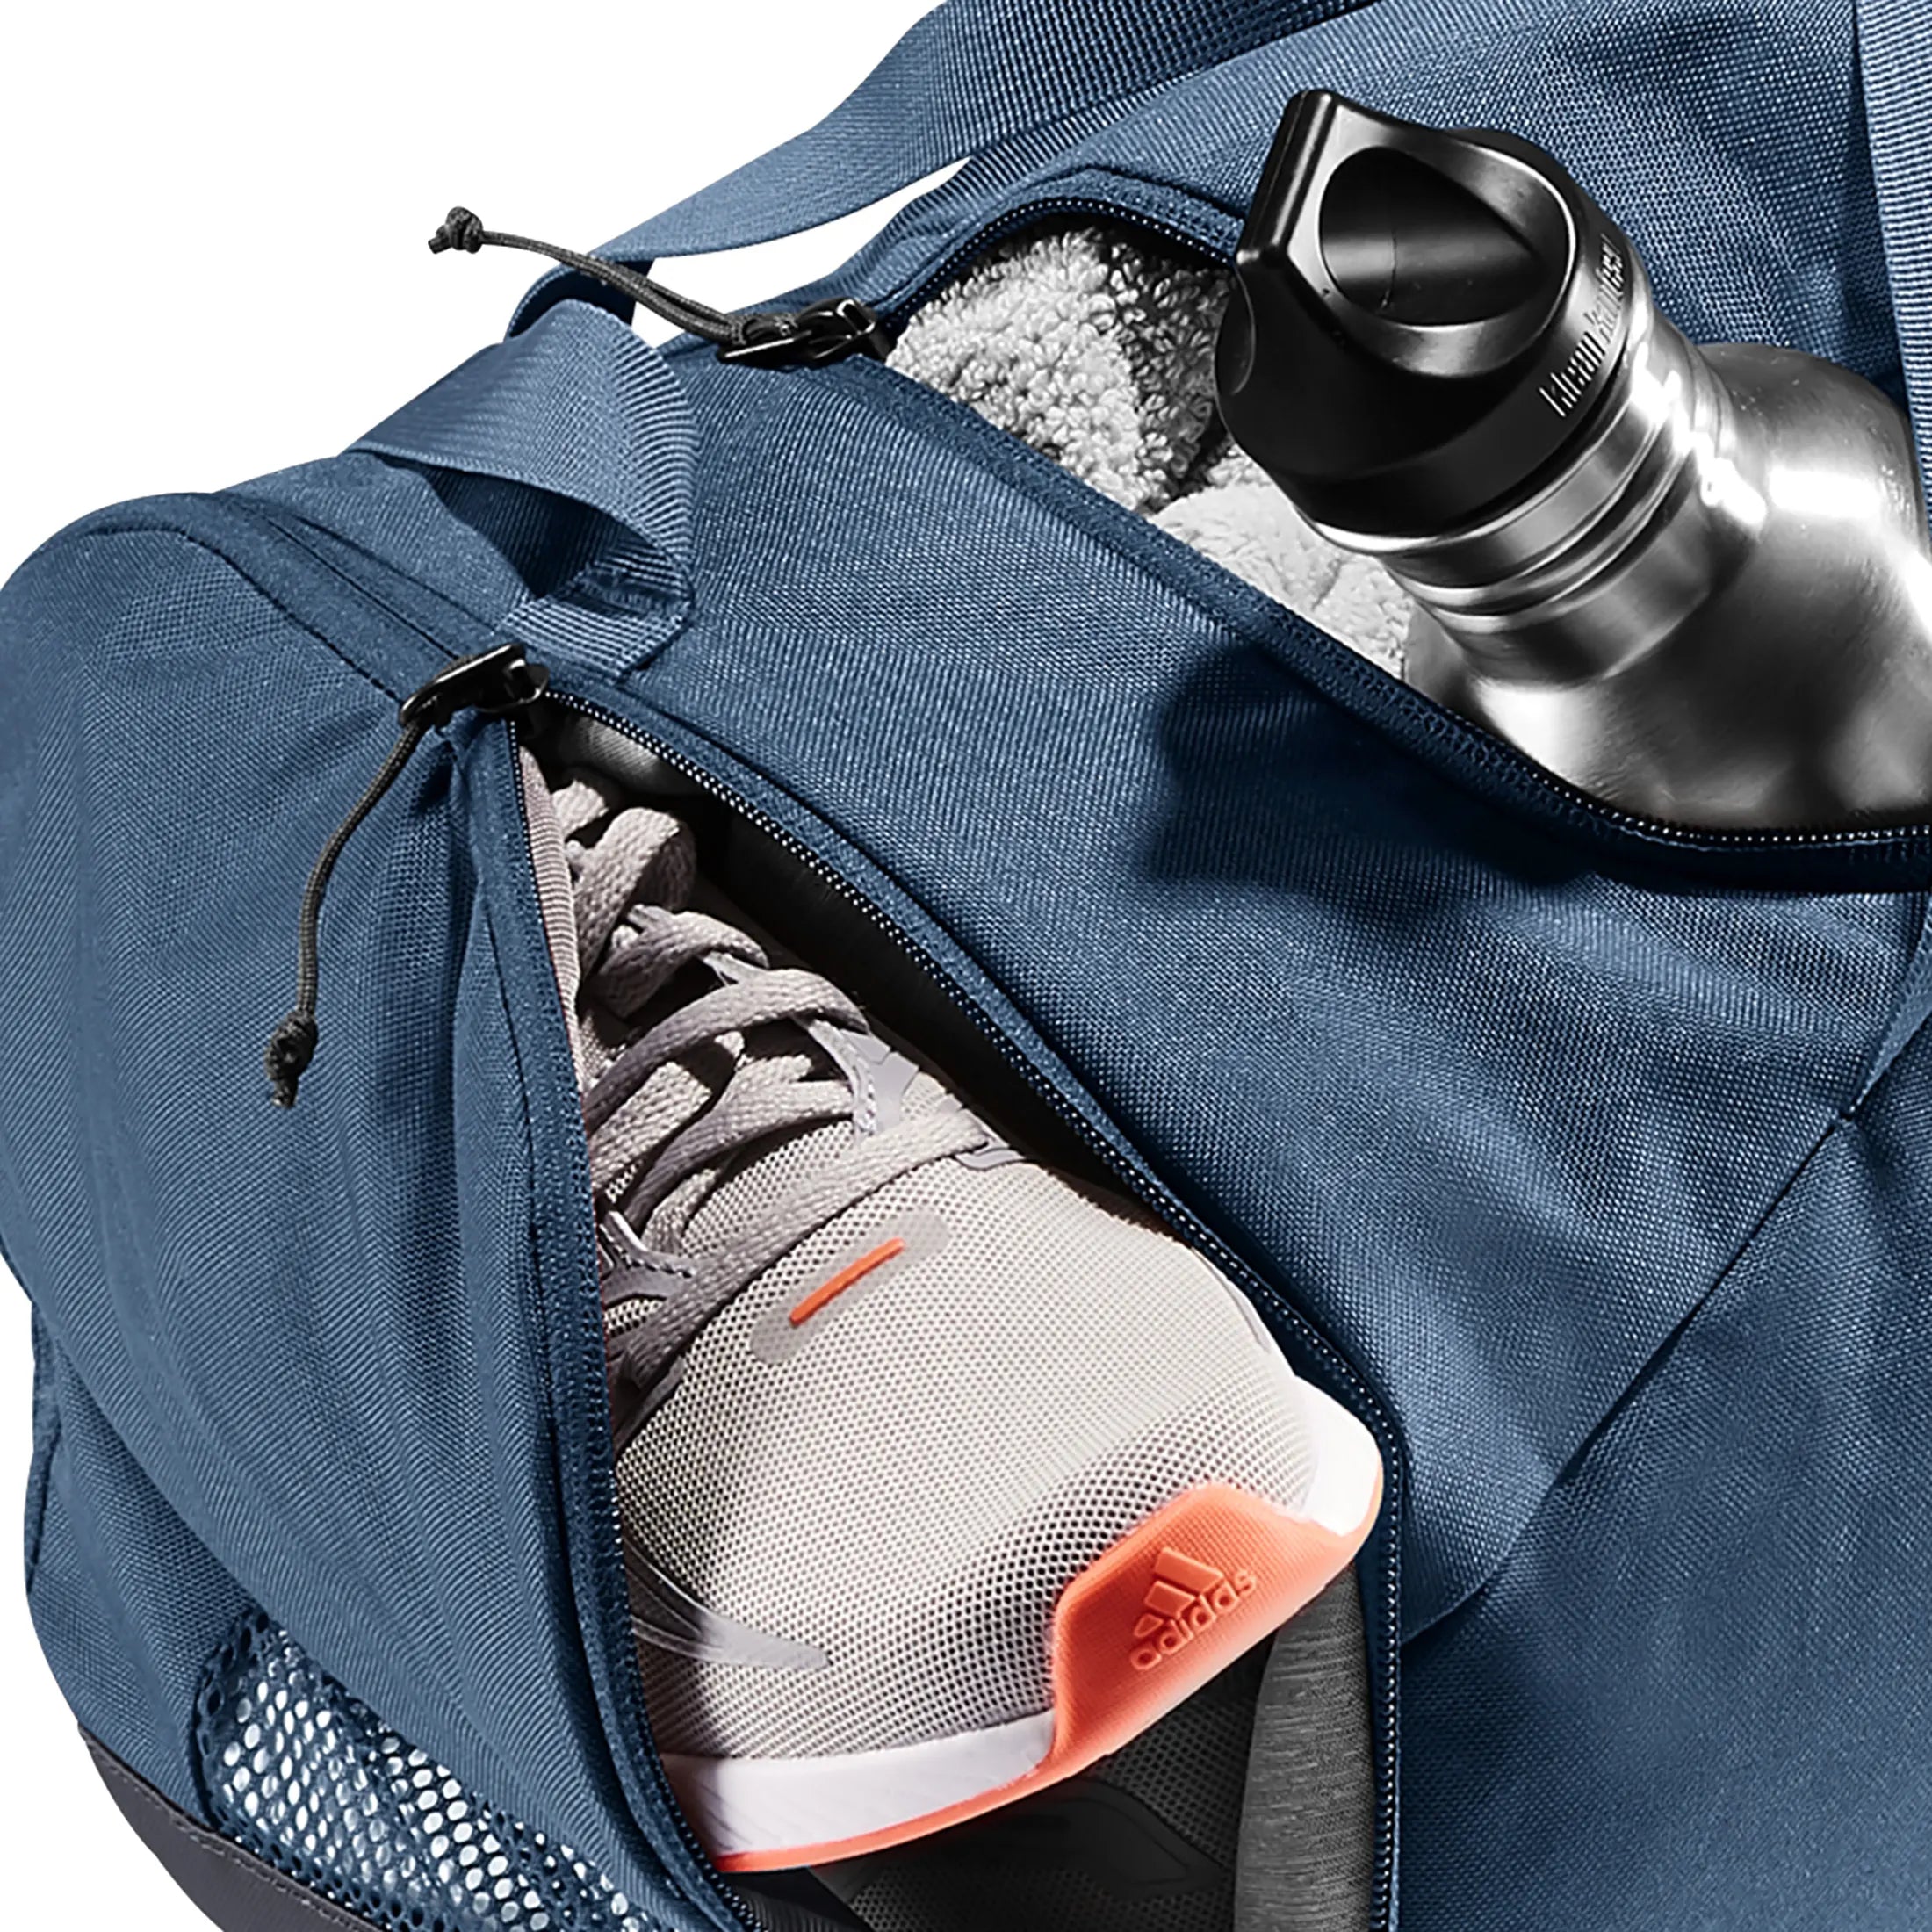 Deuter Daypack Hopper sports bag 48 cm - Khaki-Graphite